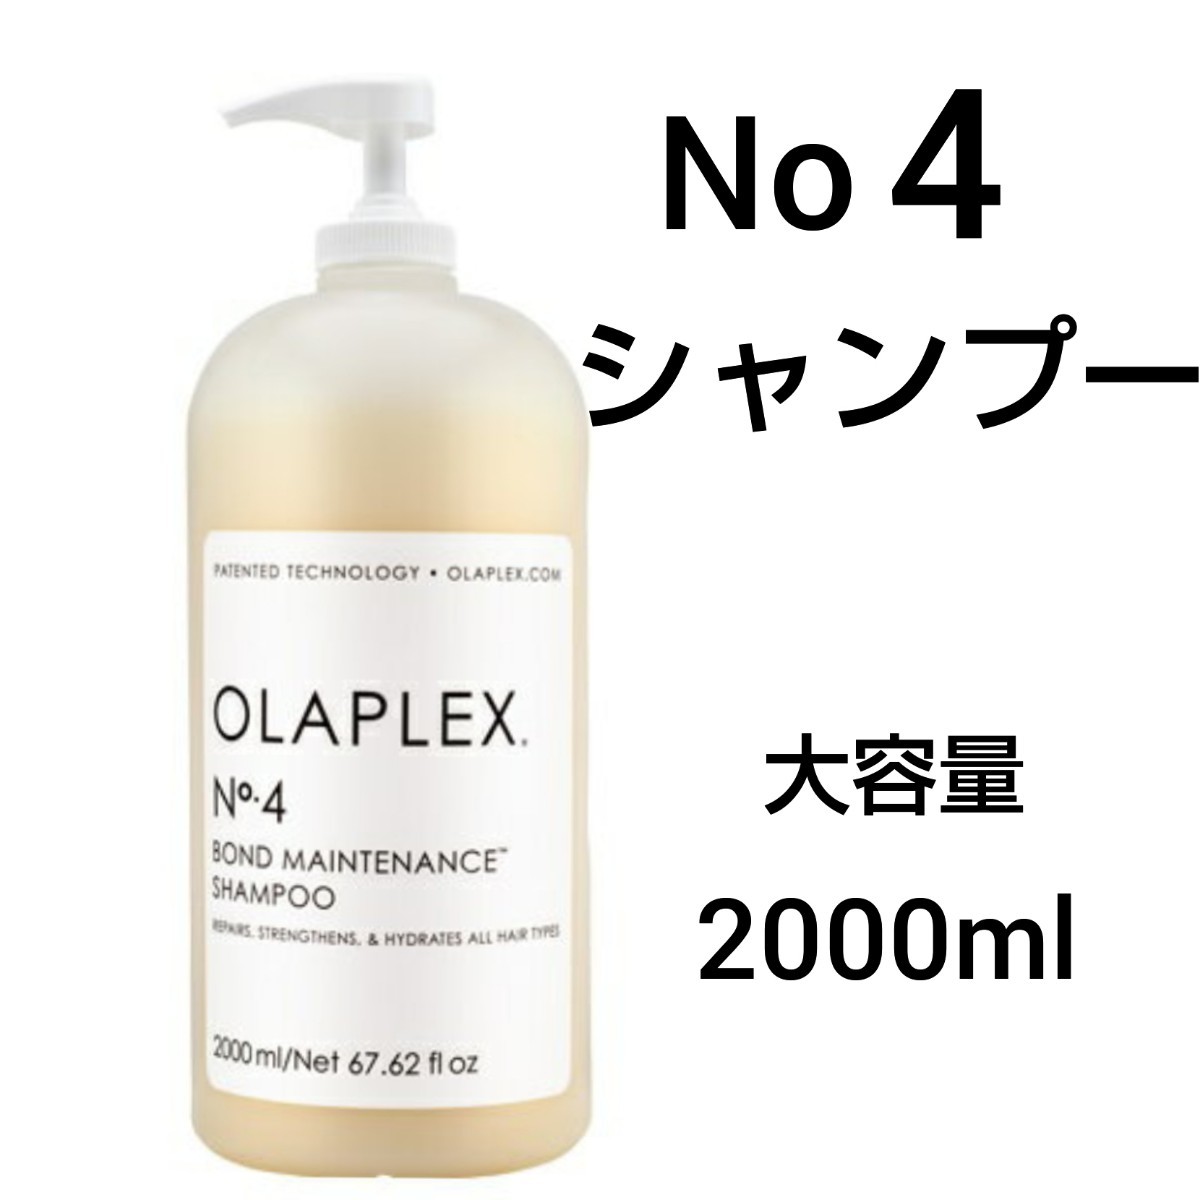 オラプレックス No 4 シャンプー 2000ml サロンサイズ 業務用｜PayPay